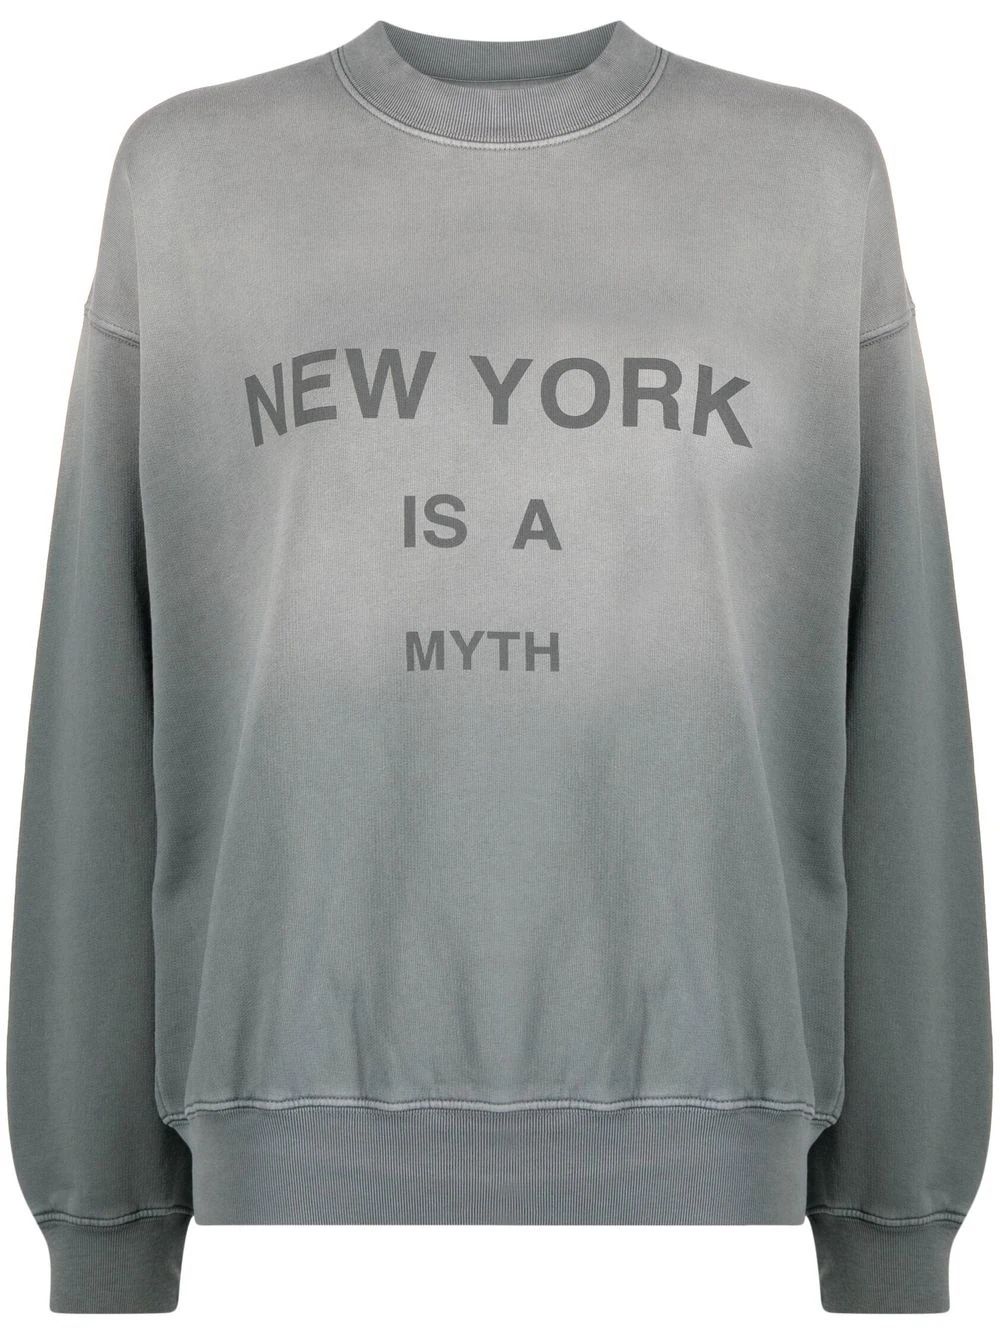 ANINE BING New York Is A Myth Print Sweatshirt - Farfetch | Farfetch Global